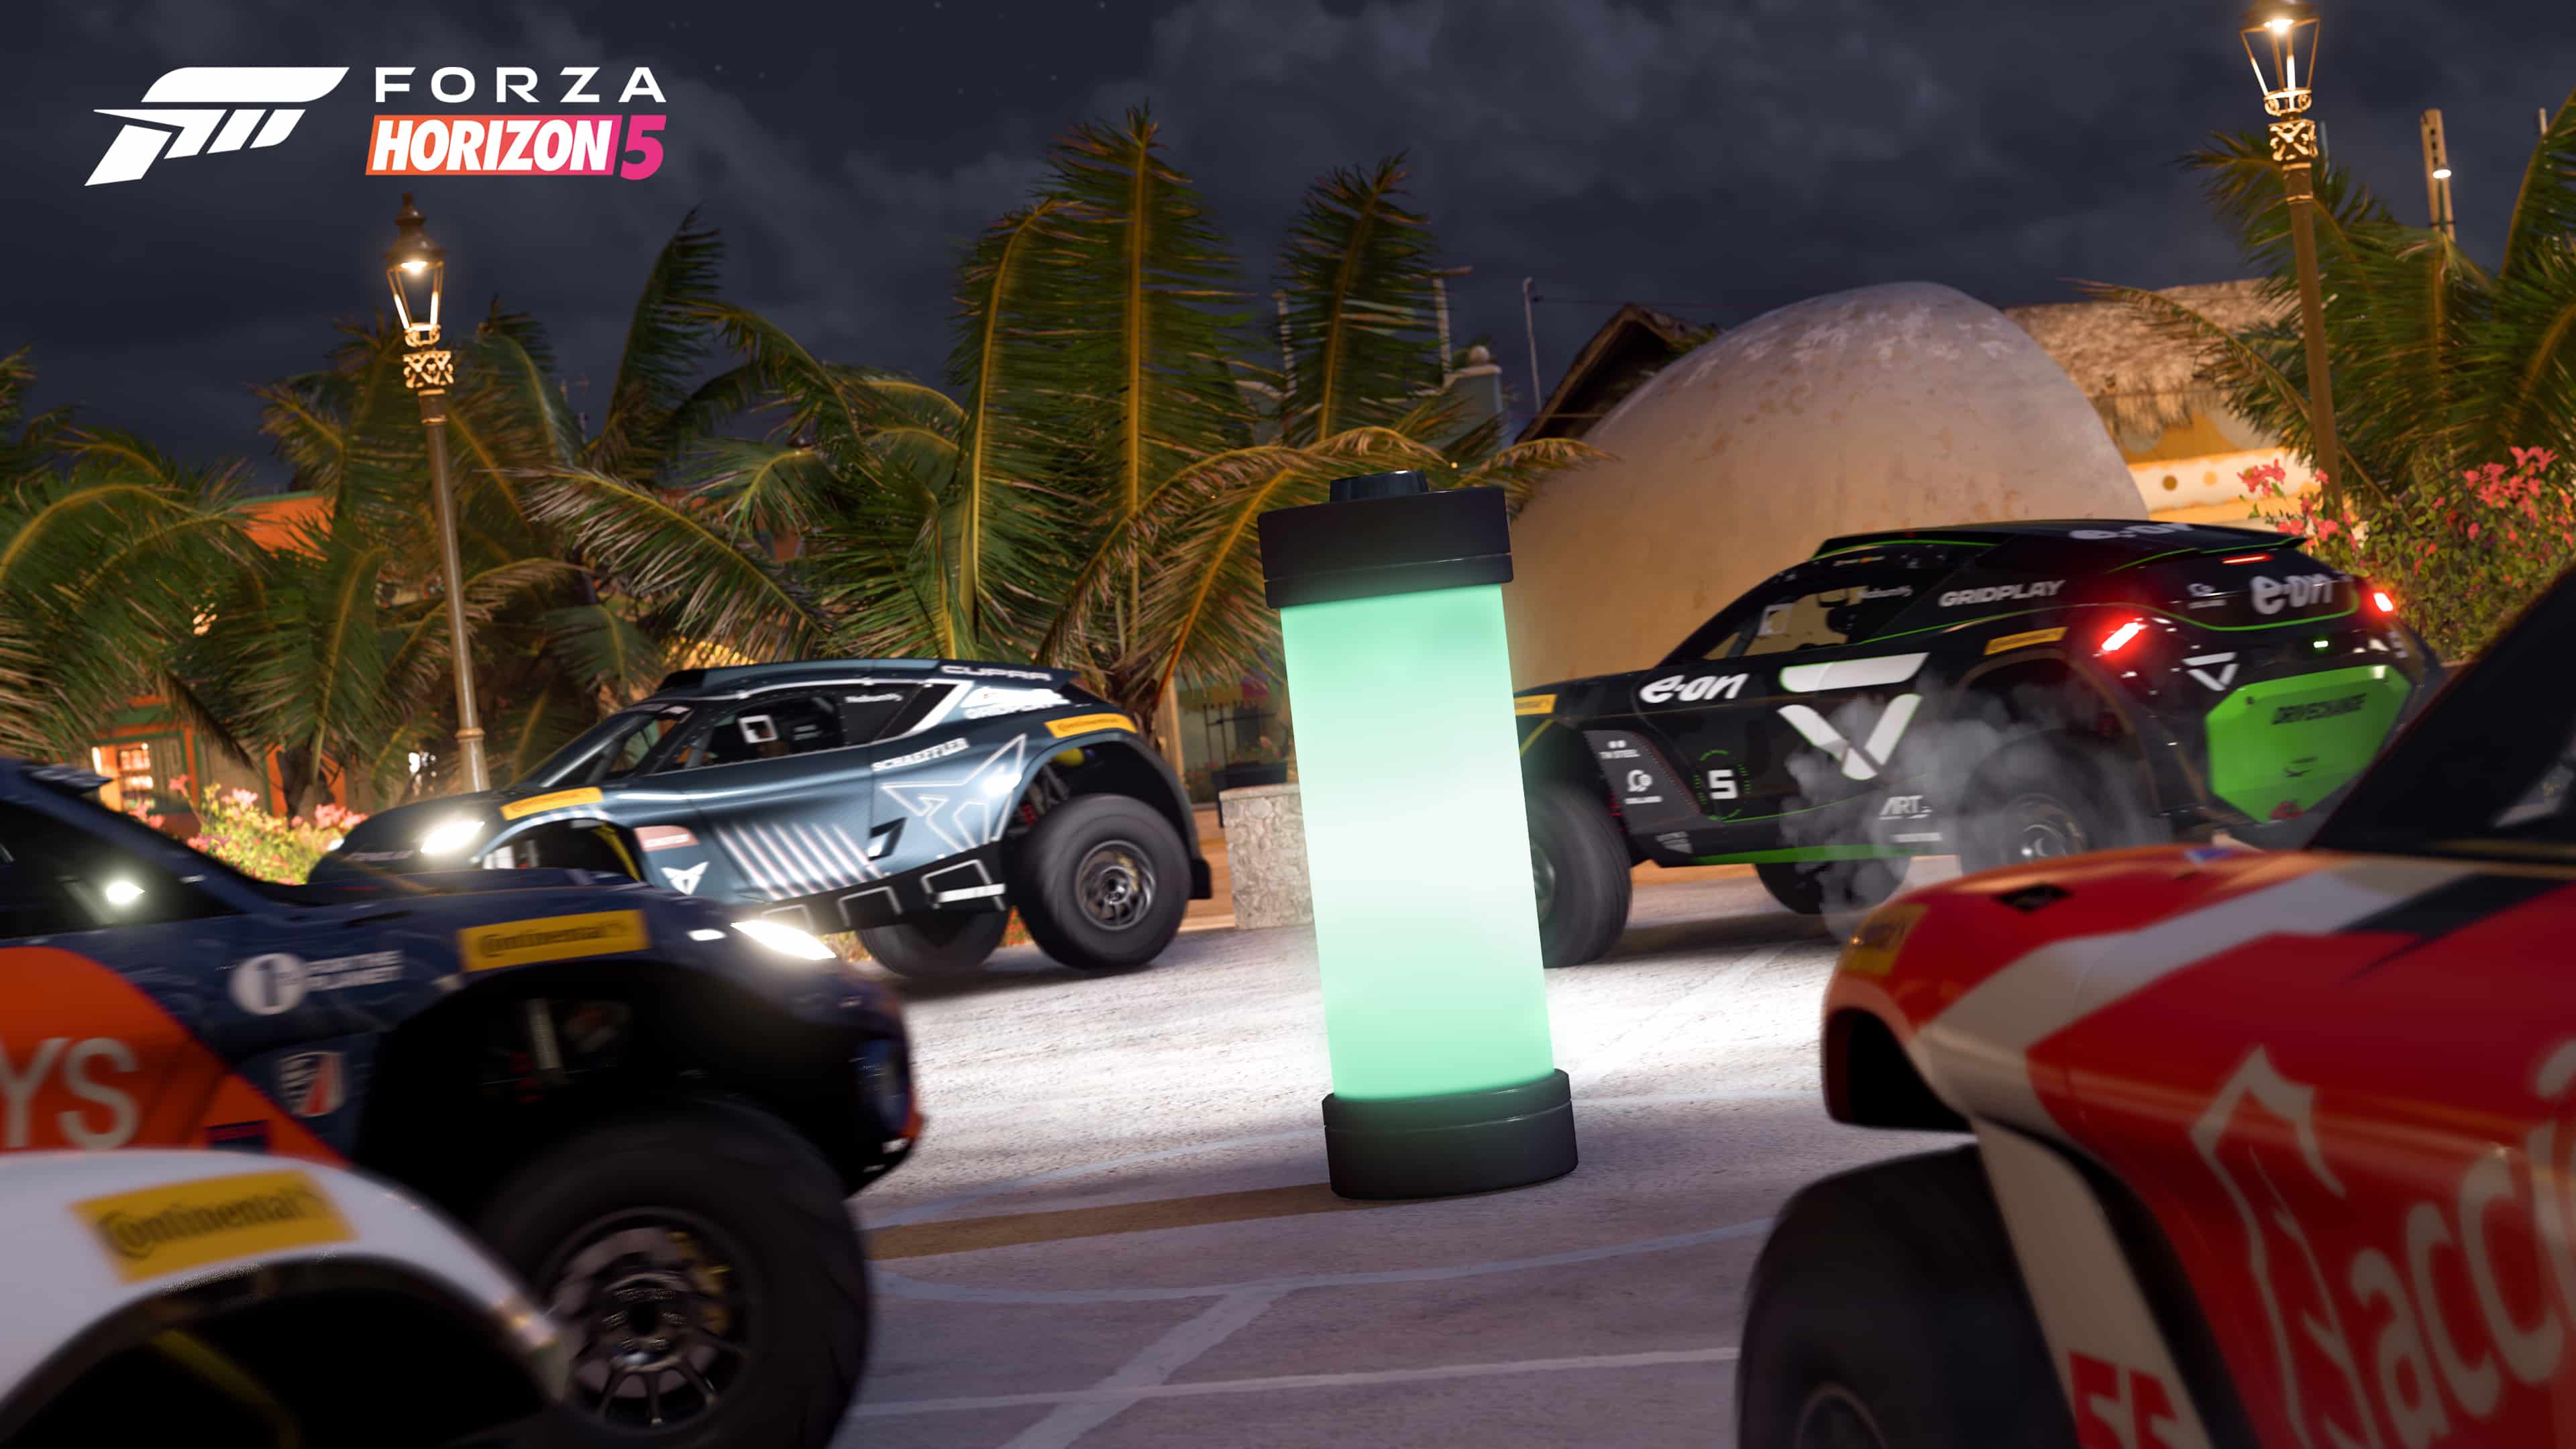 Forza Horizon 5 Series 10 update